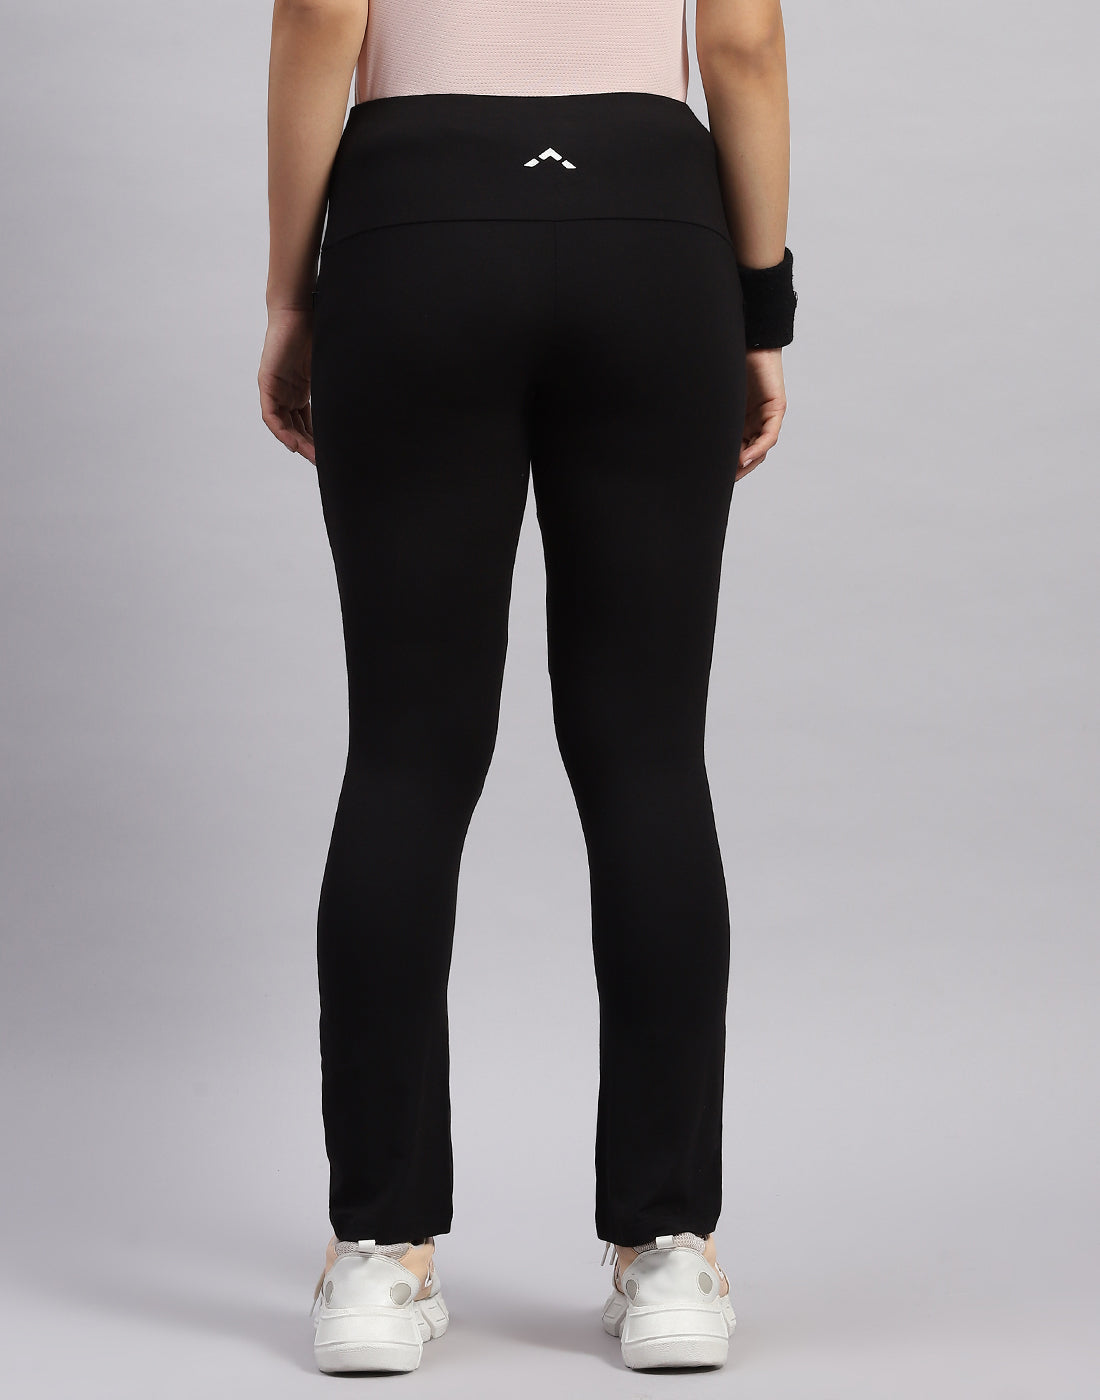 Women Black Solid Regular Fit Yoga Pant